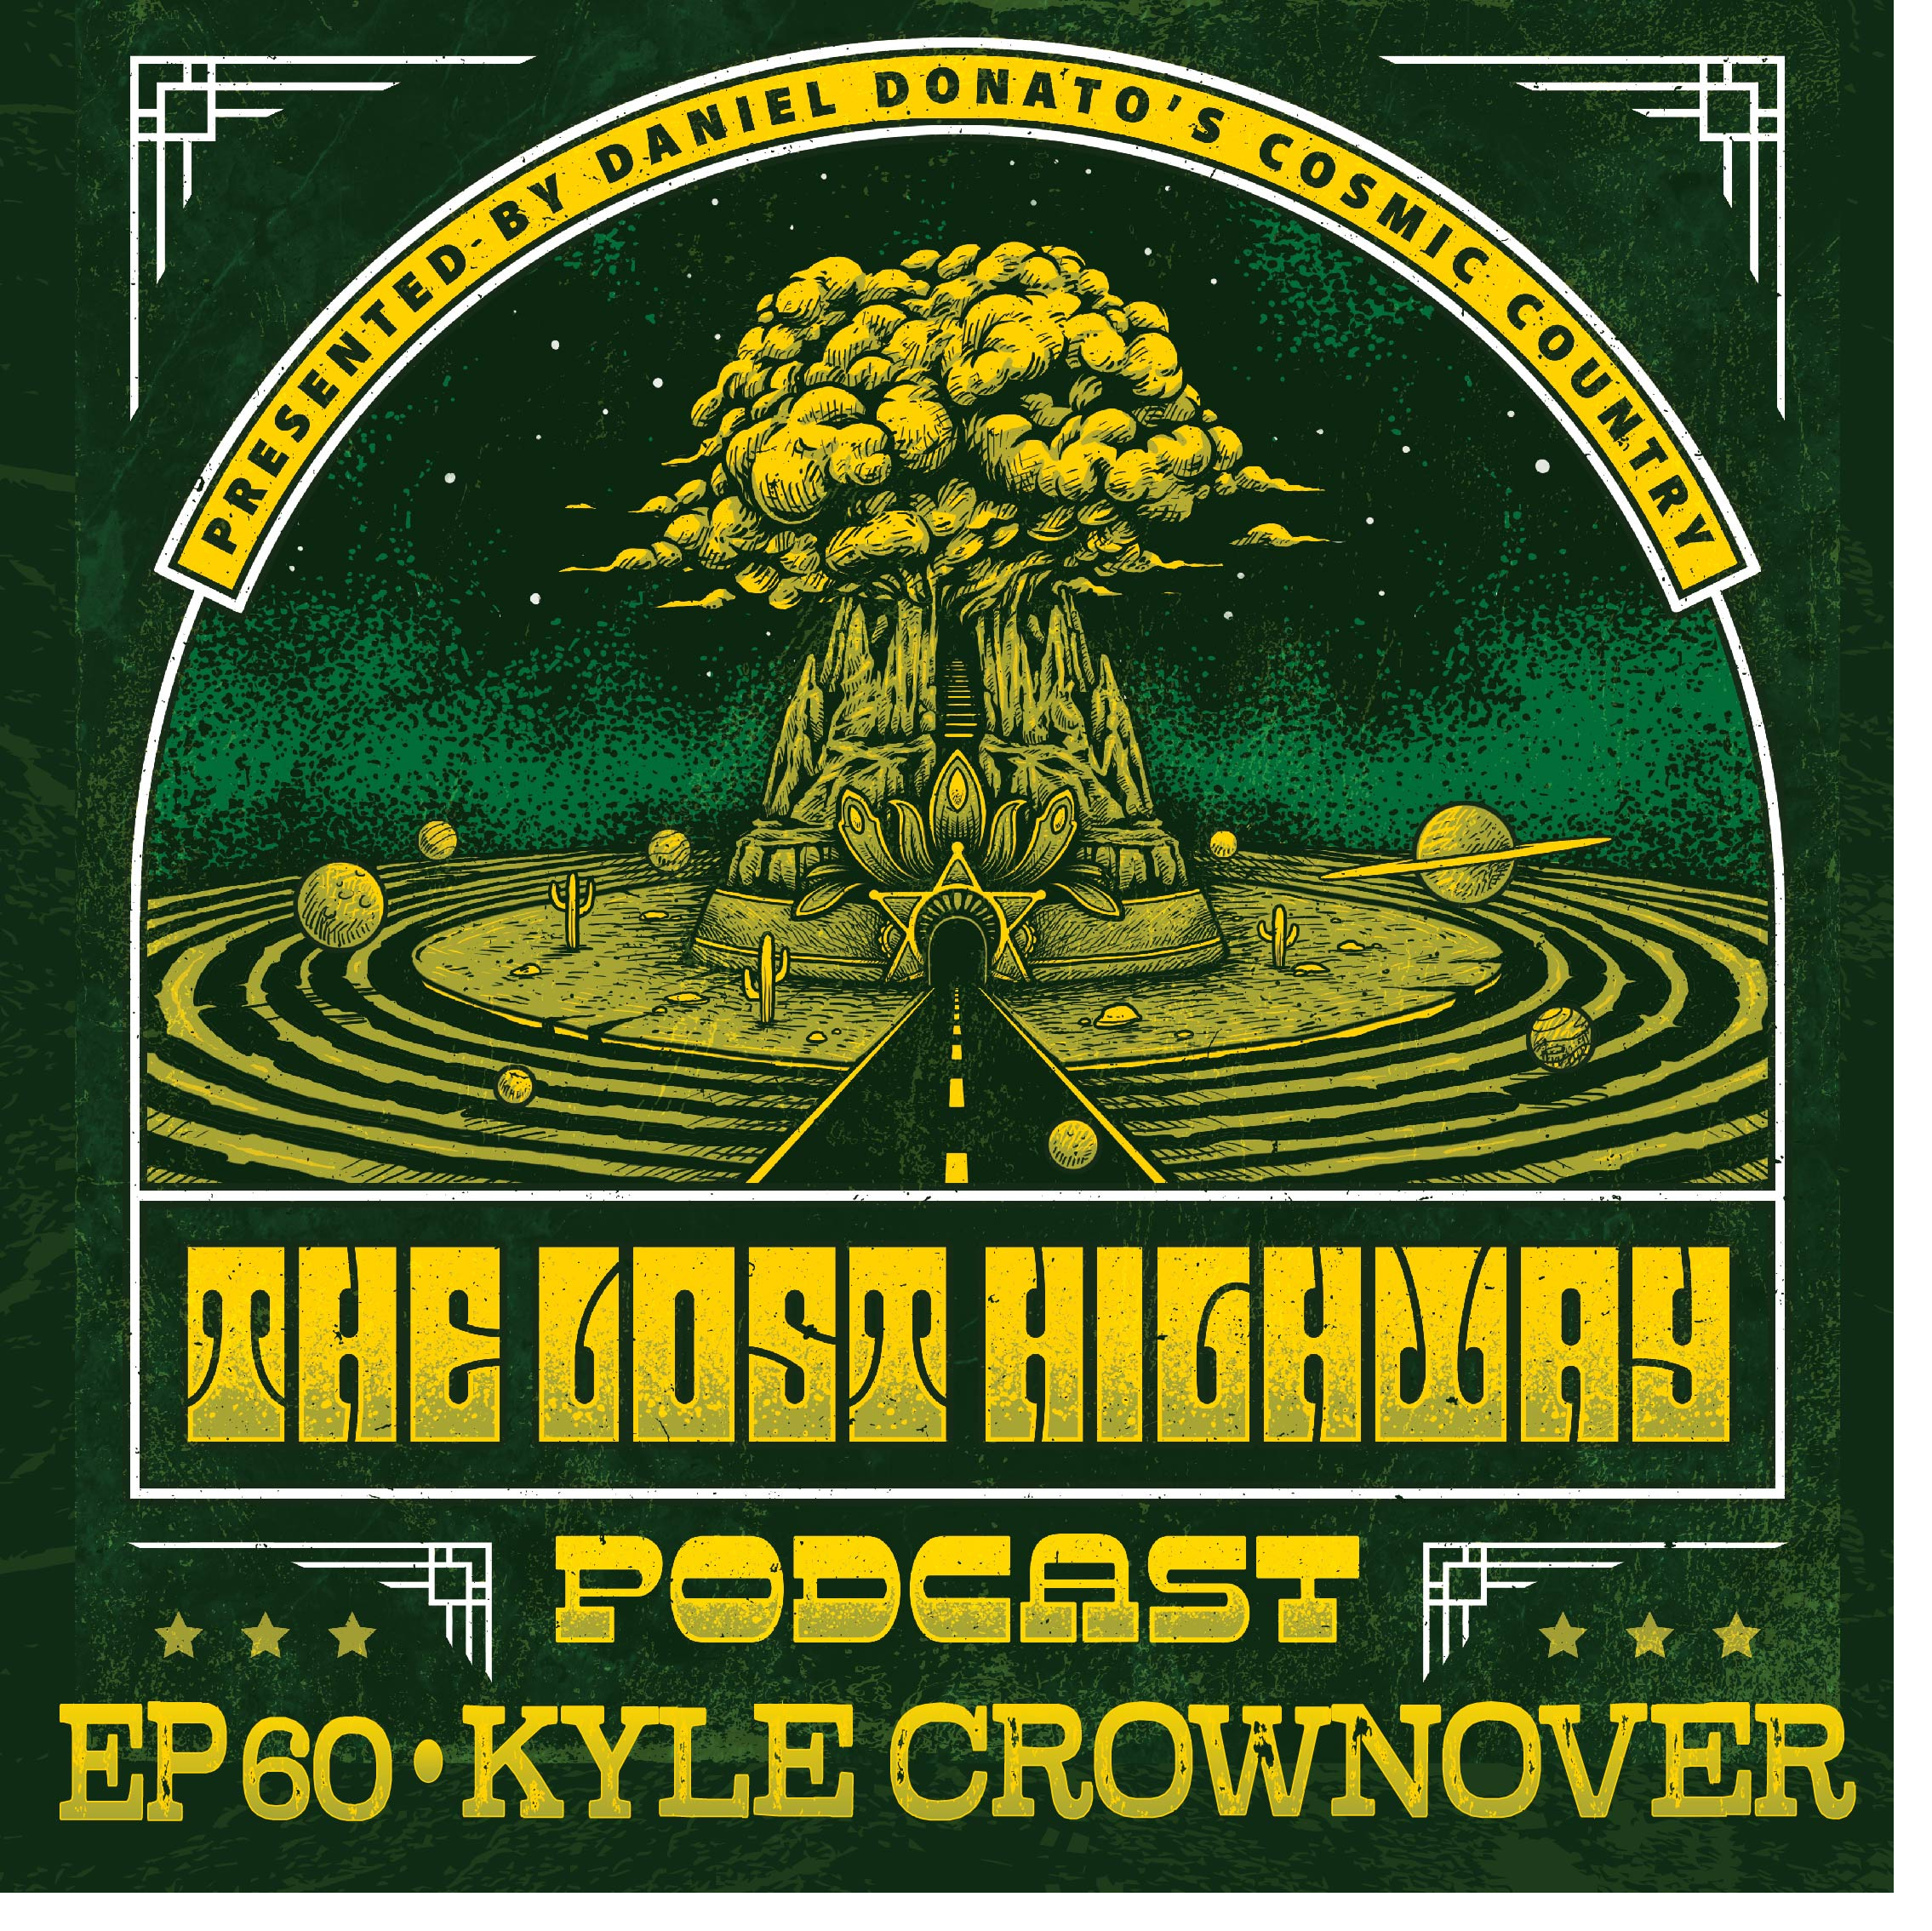 Episode 60: Kyle Crownover